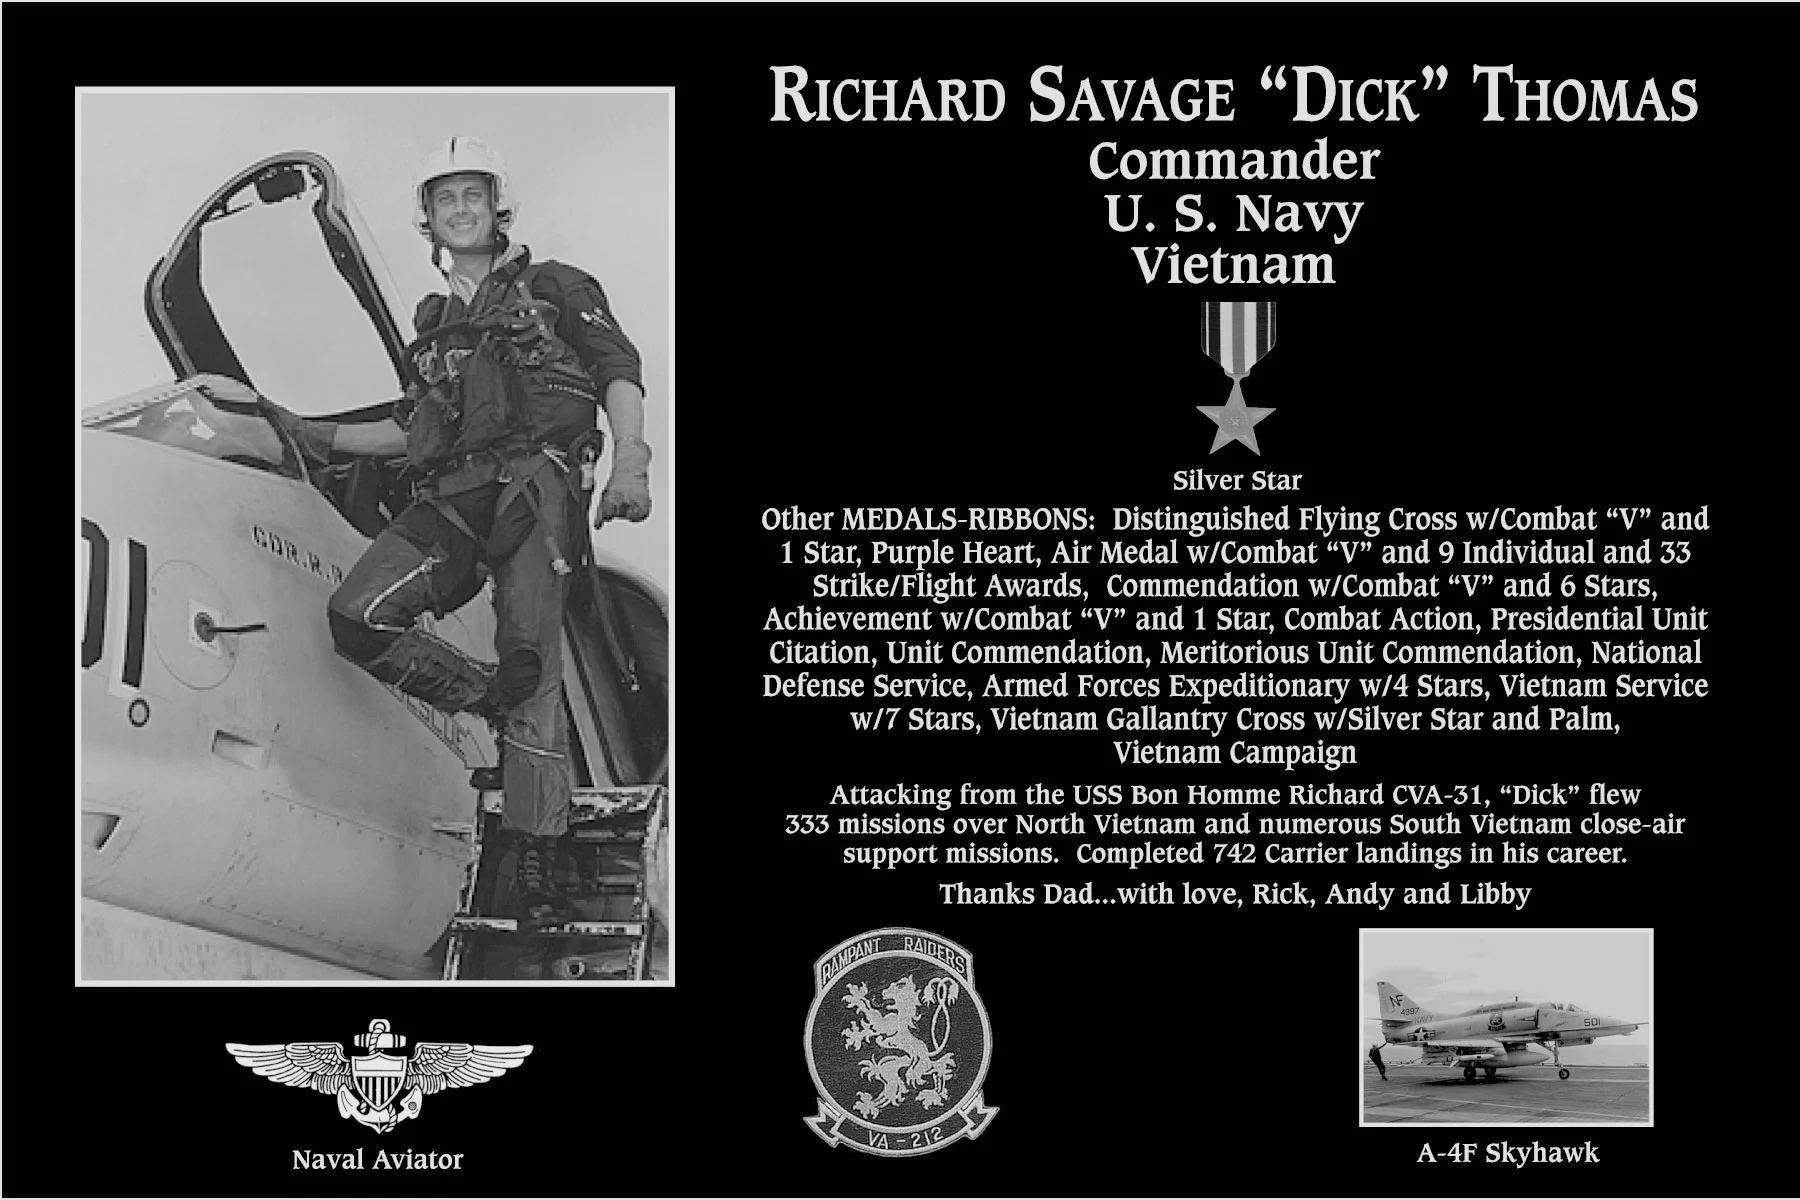 Richard Savage “Dick” Thomas